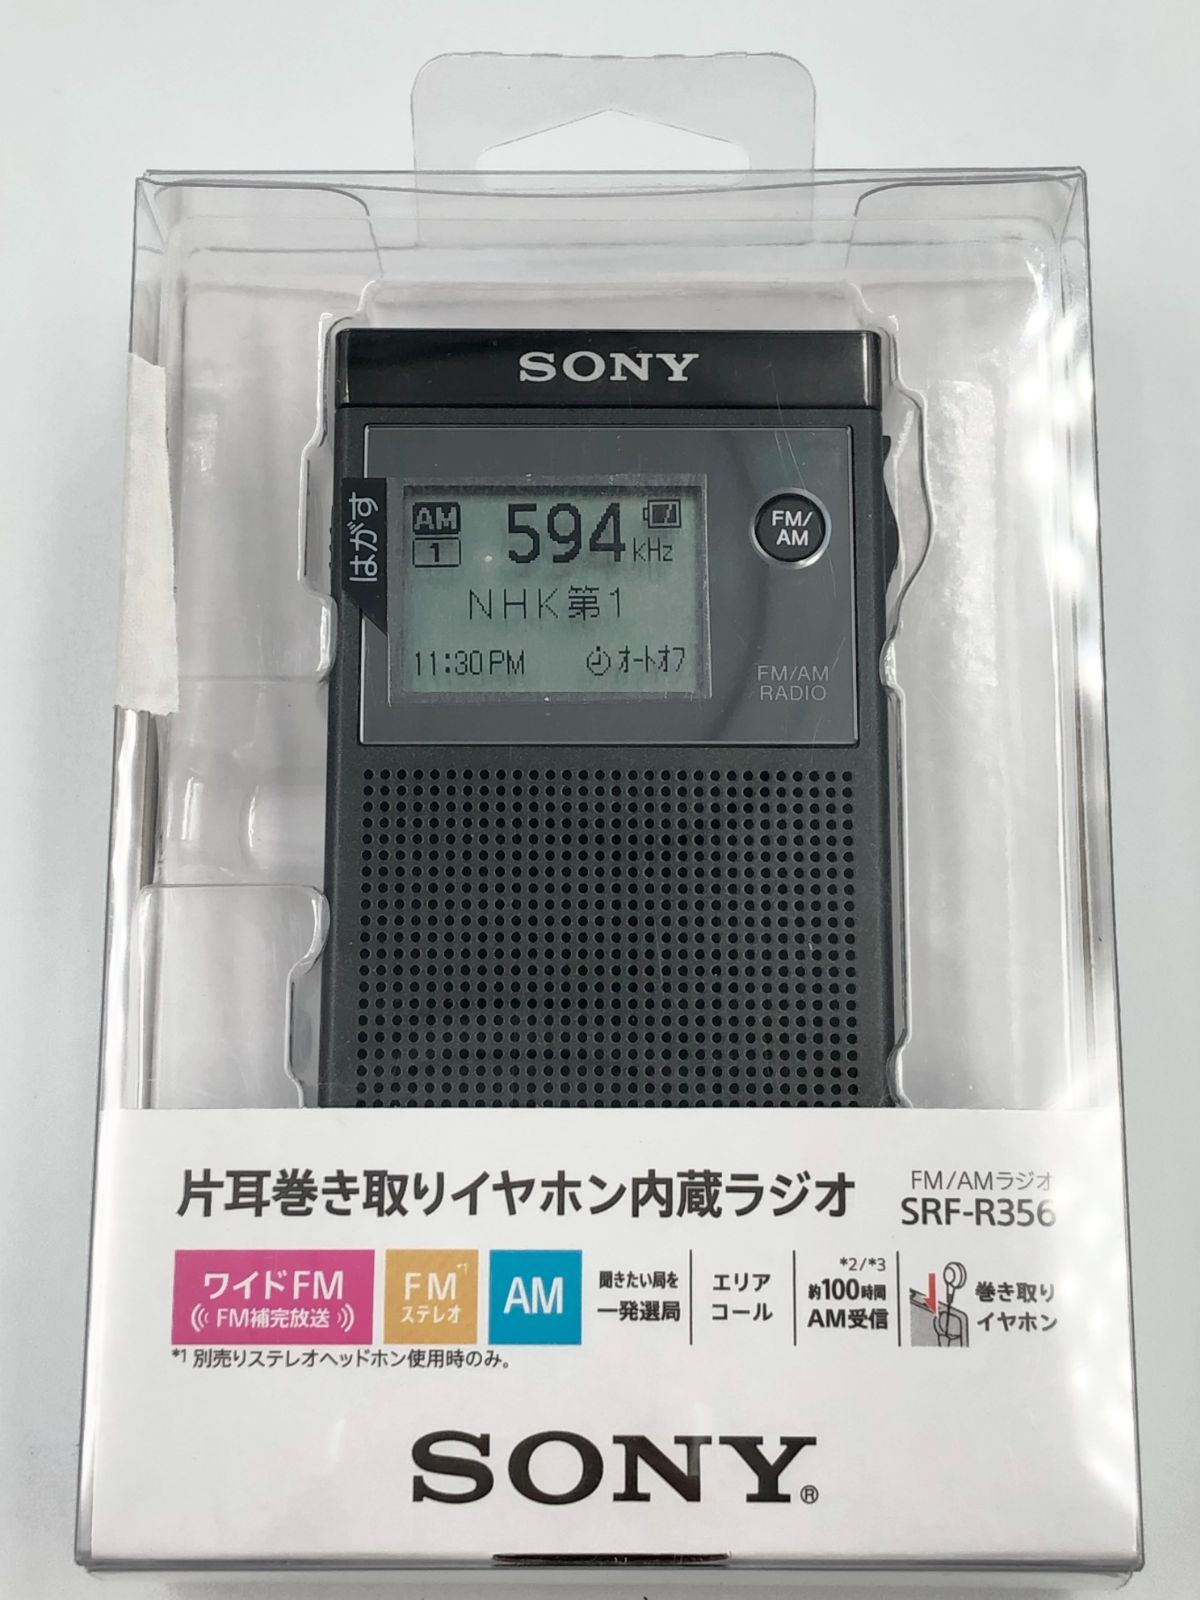 ソニーラジオ SONY SRF-R356 - ラジオ